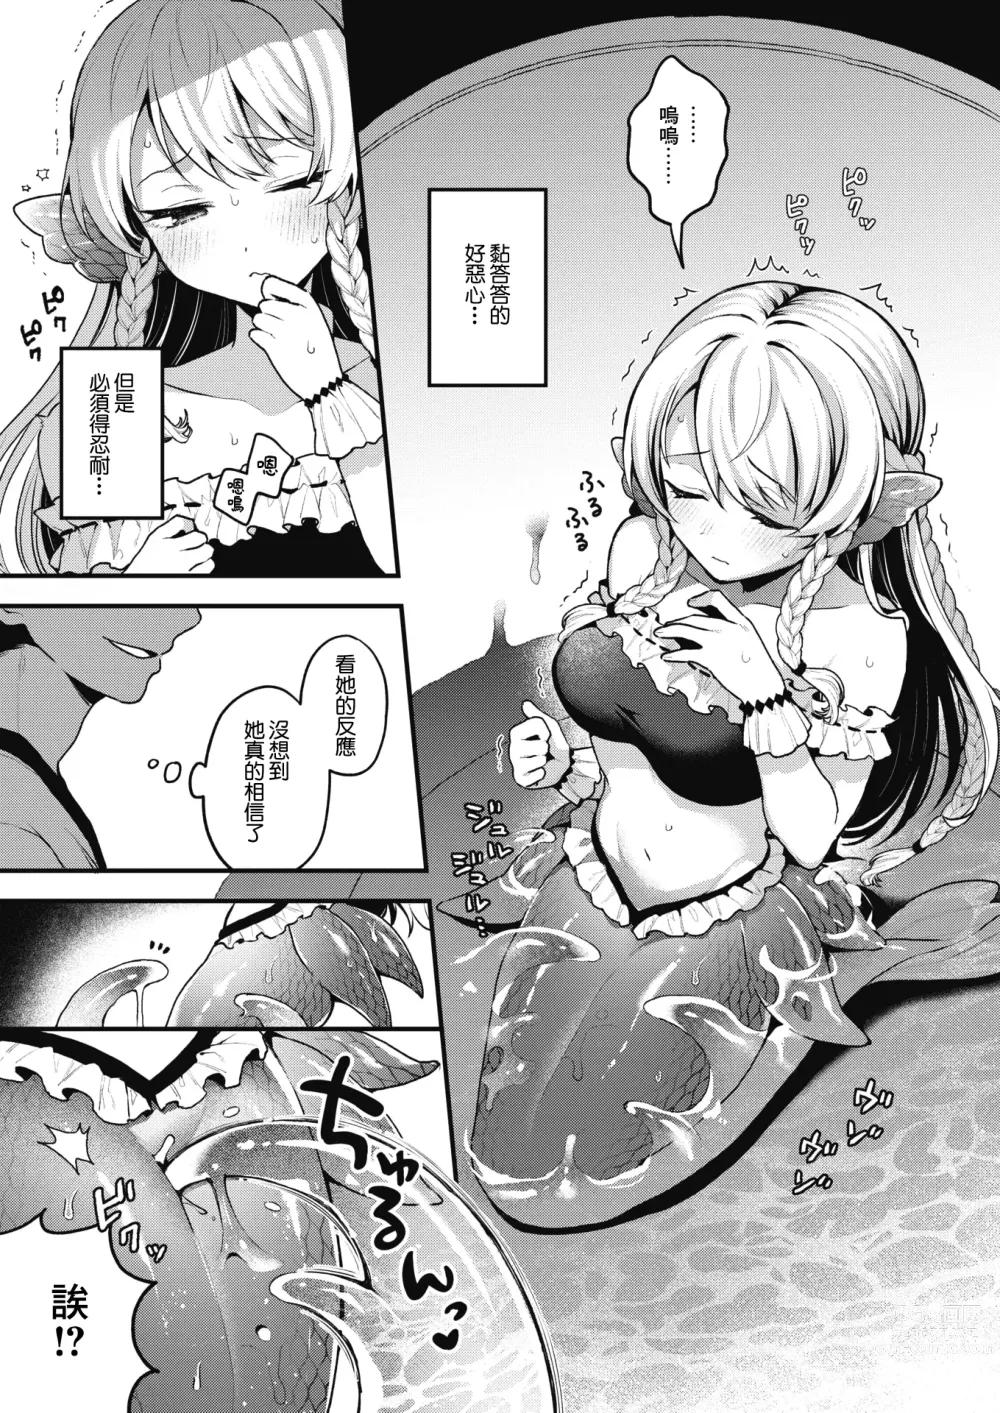 Page 8 of manga 雖然這裡沒有王子大人